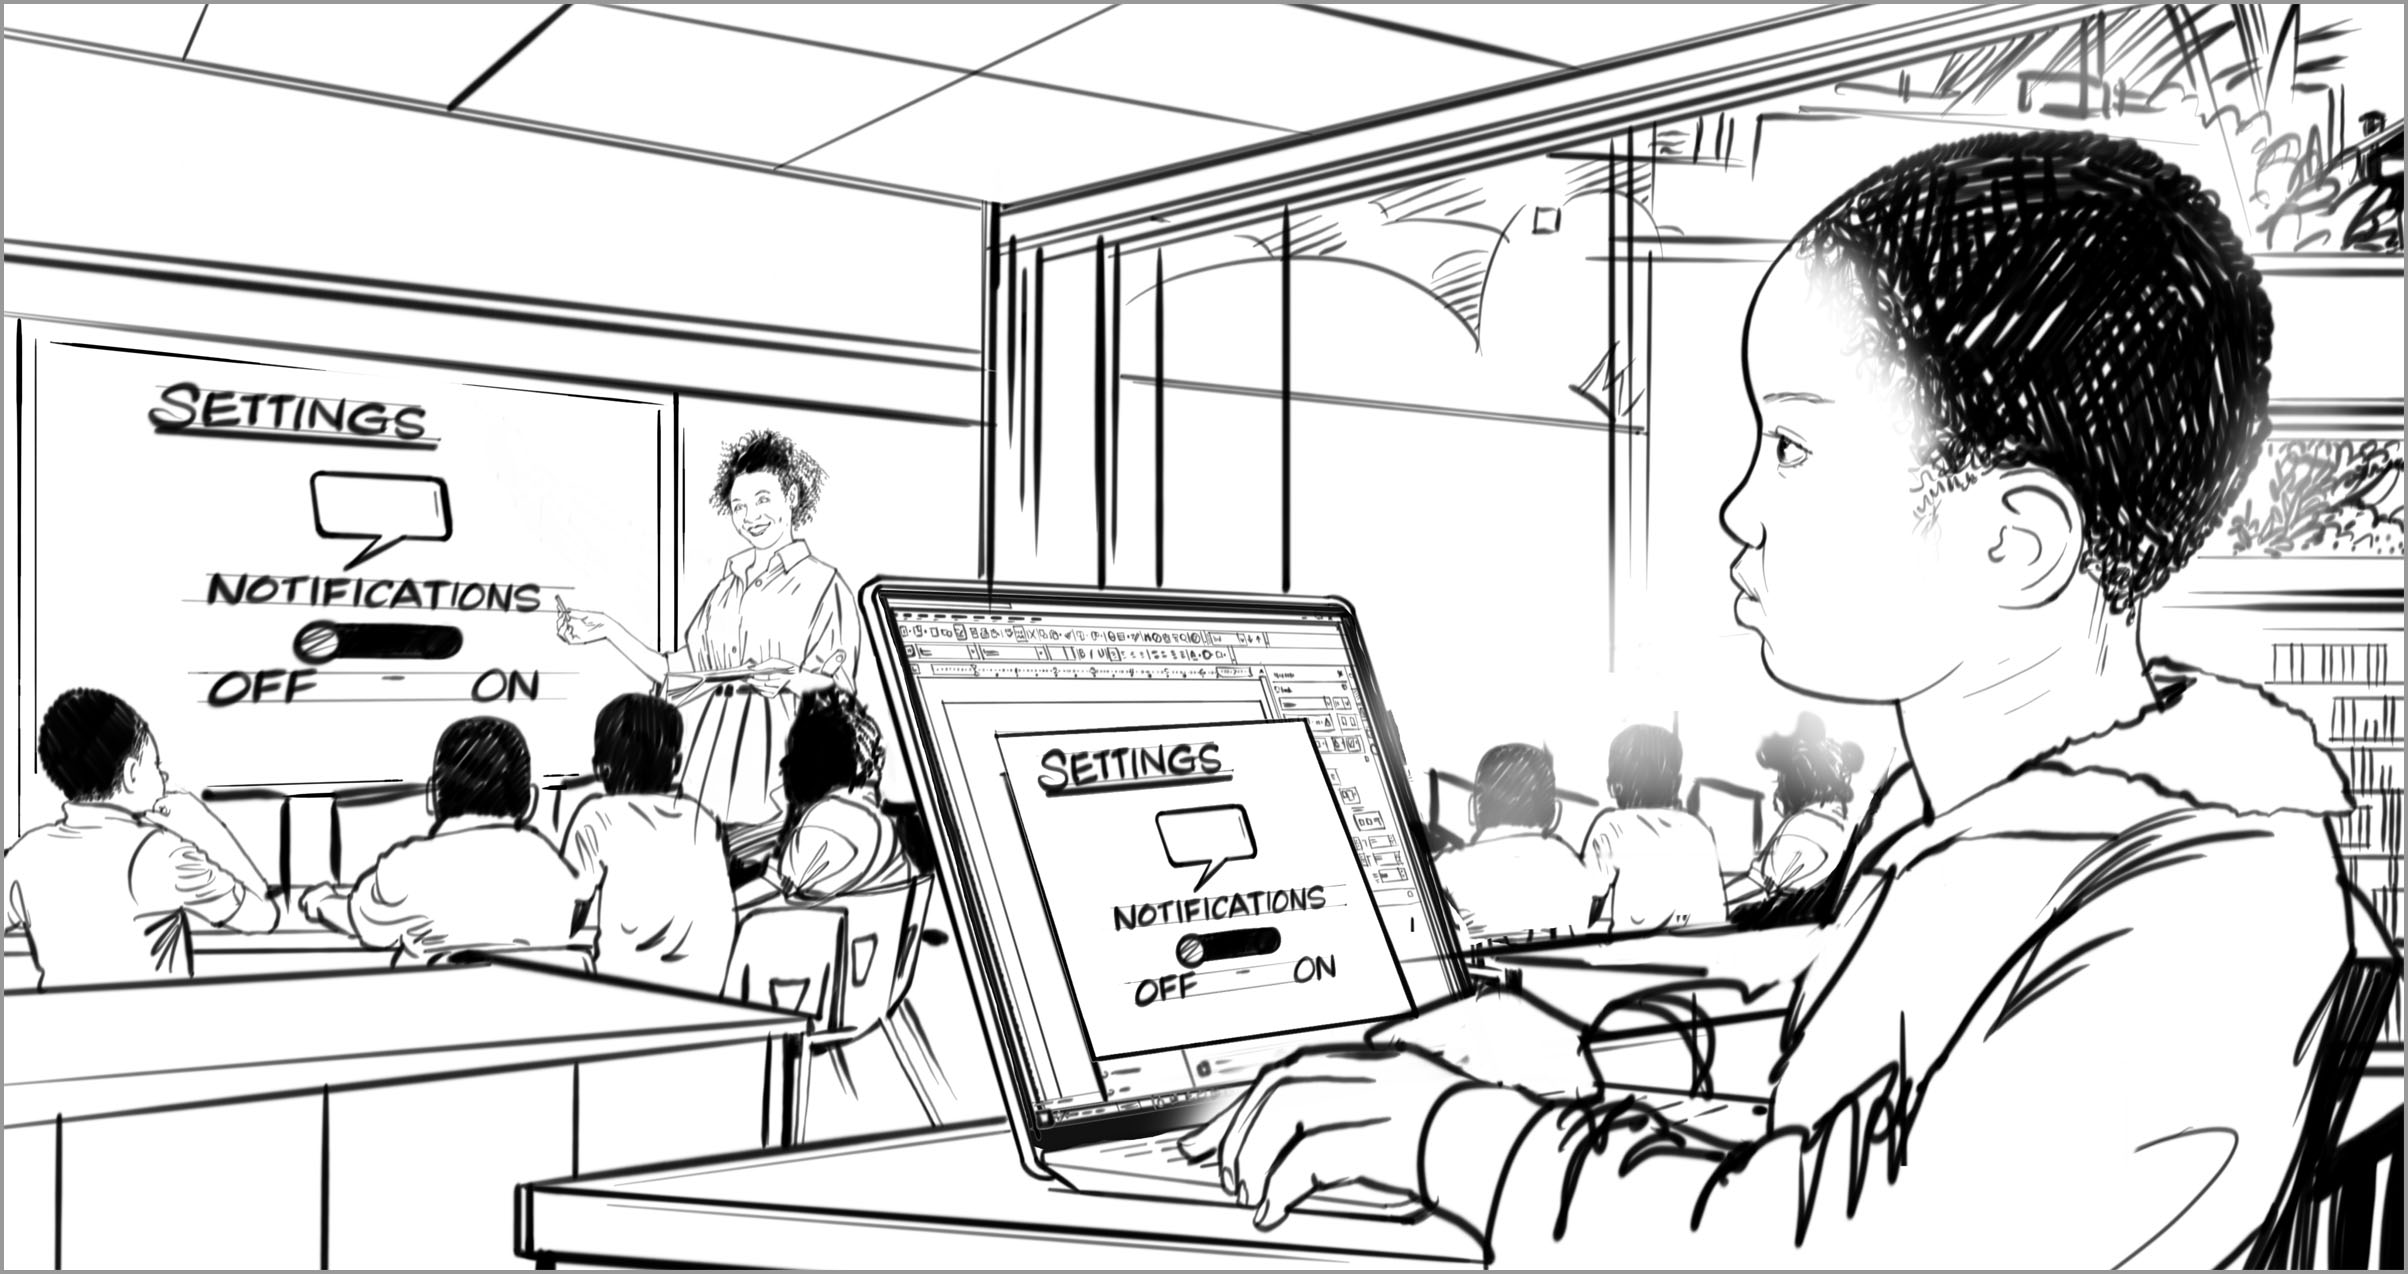 這個小童會在單一窗口開啟時查看膝上型計算機。他看起來很輕鬆又專注。